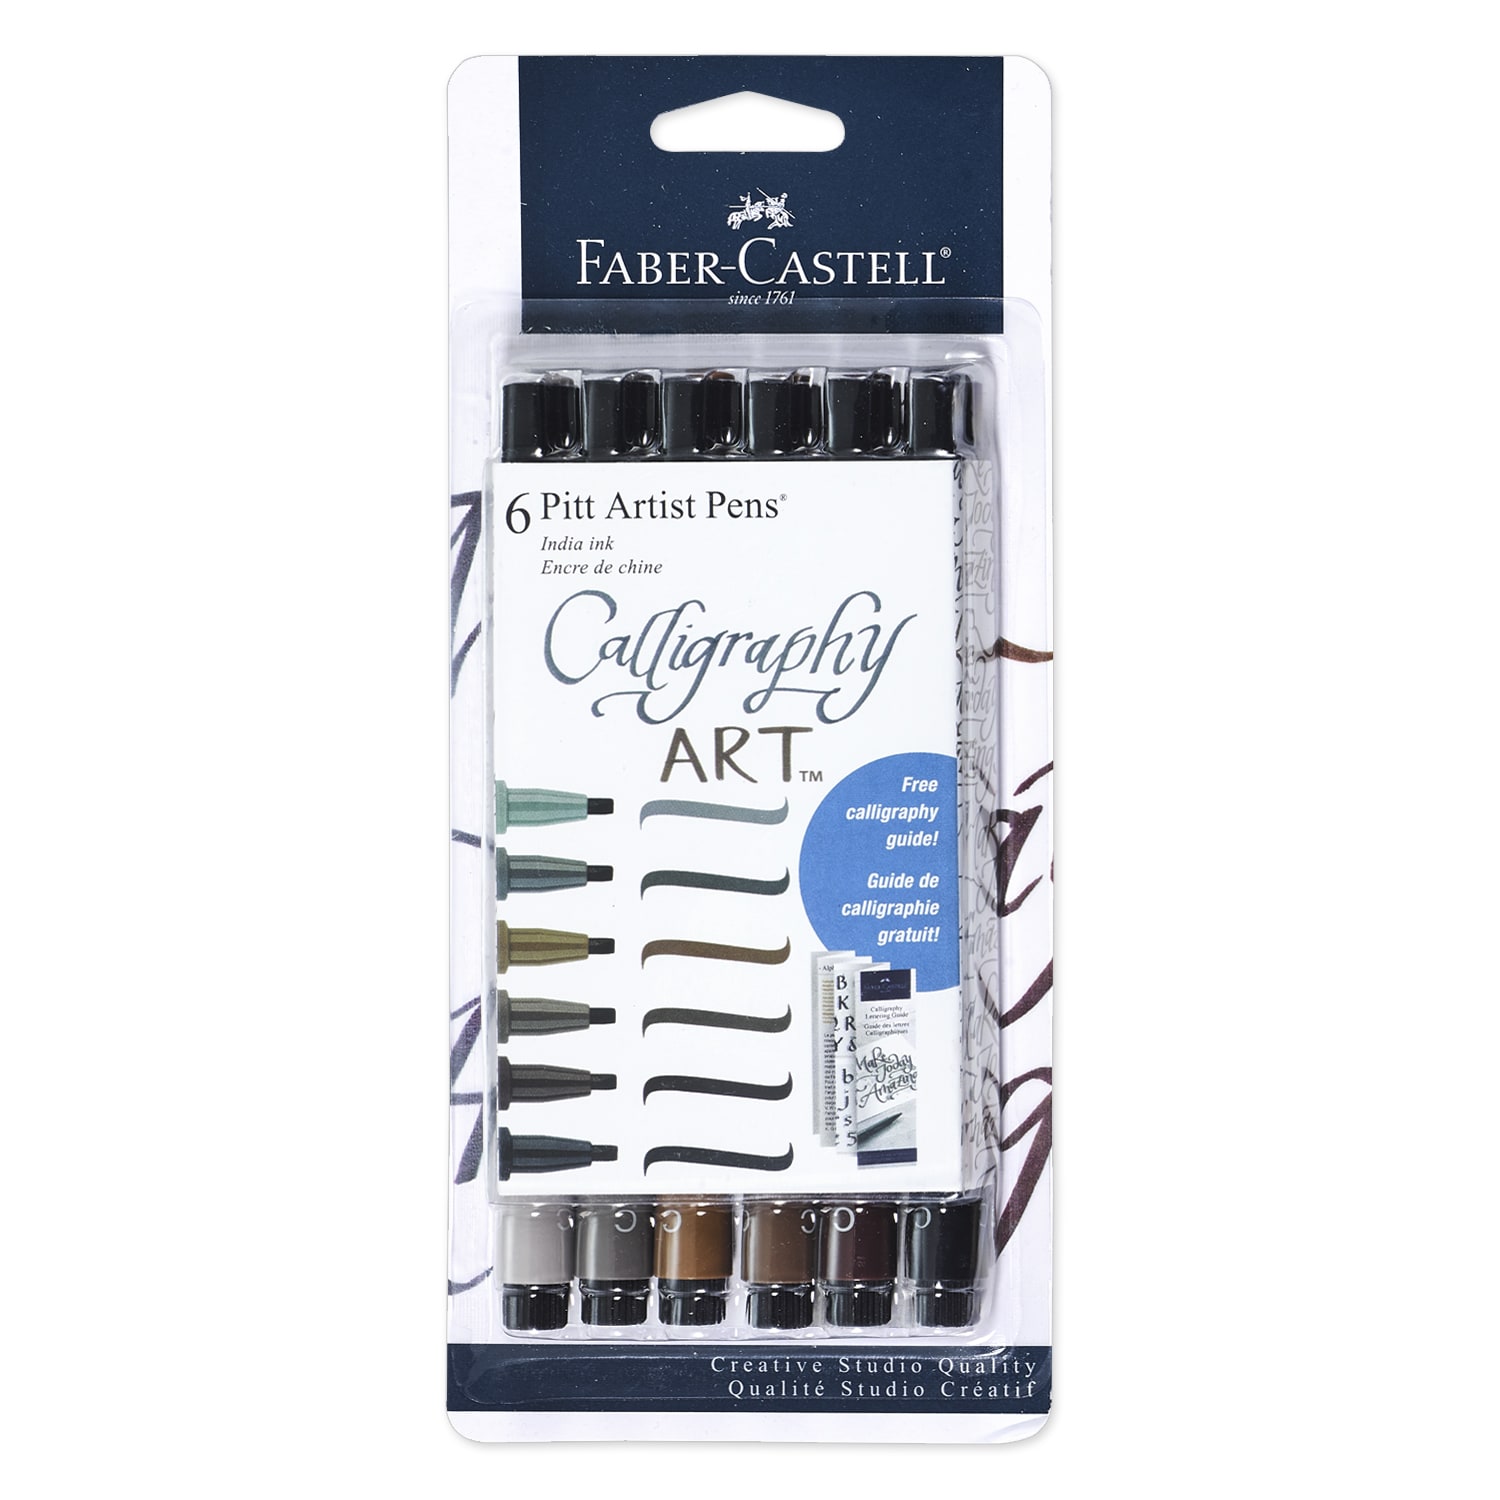 Faber-Castell | Pitt Artist Pen Hand Lettering I Set of 6